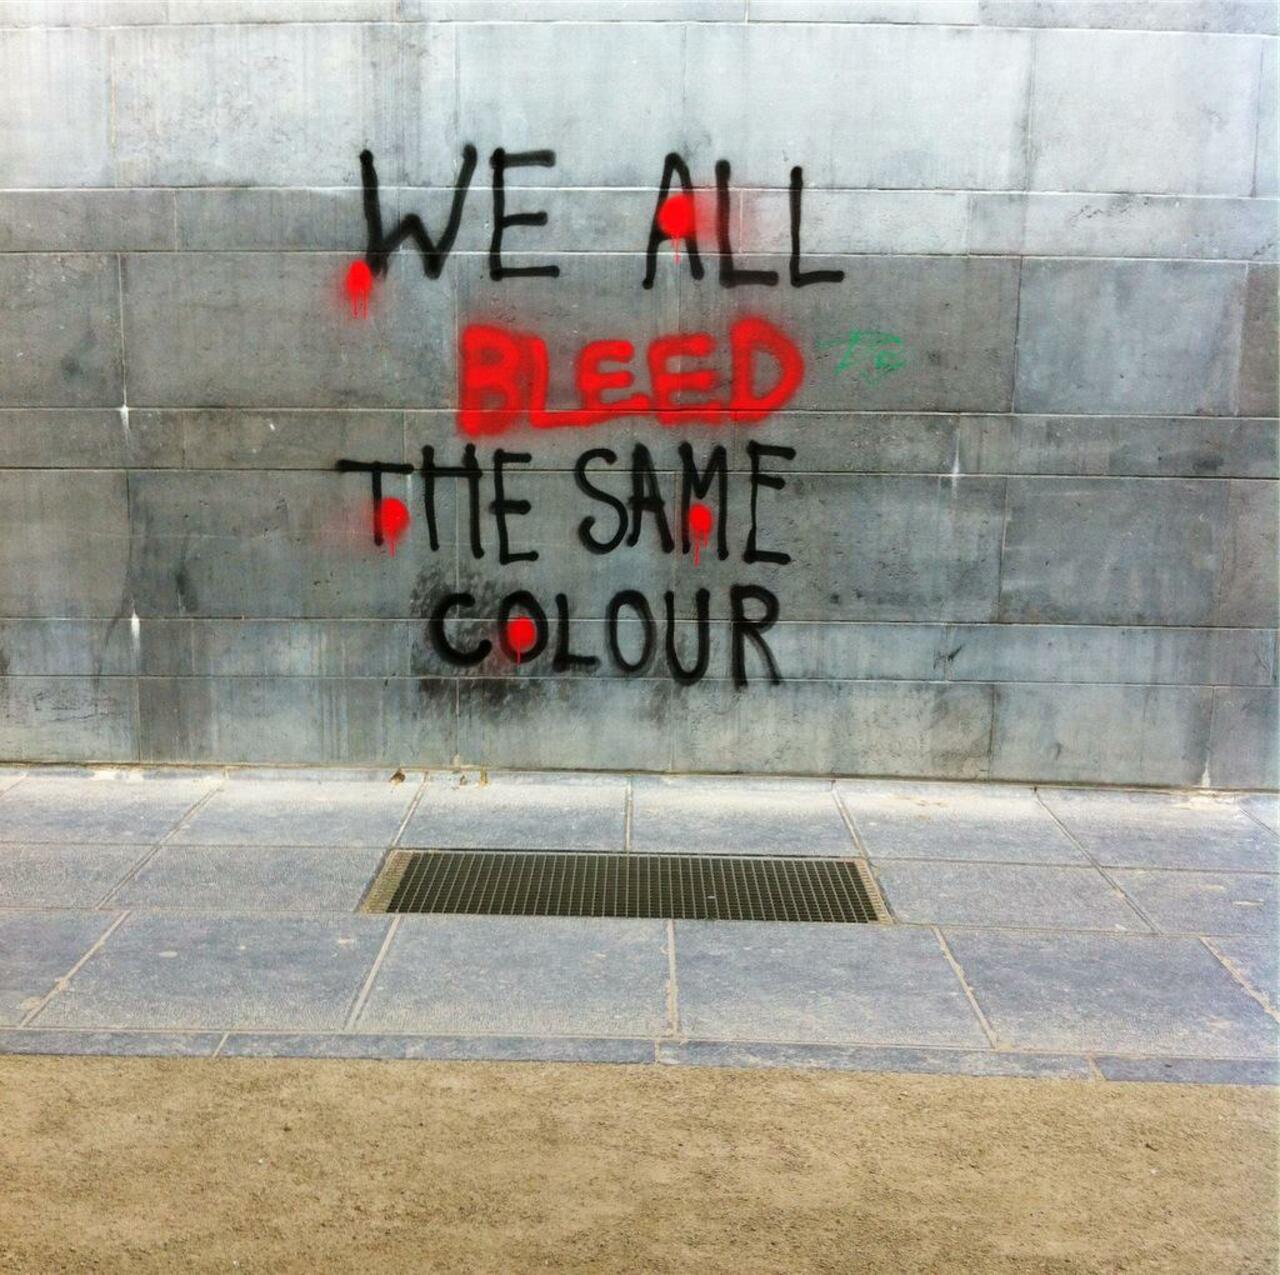 We all bleed Red #streetart #art #graffiti #Brussels #Bruxelles http://t.co/N5ytZ9Izzn